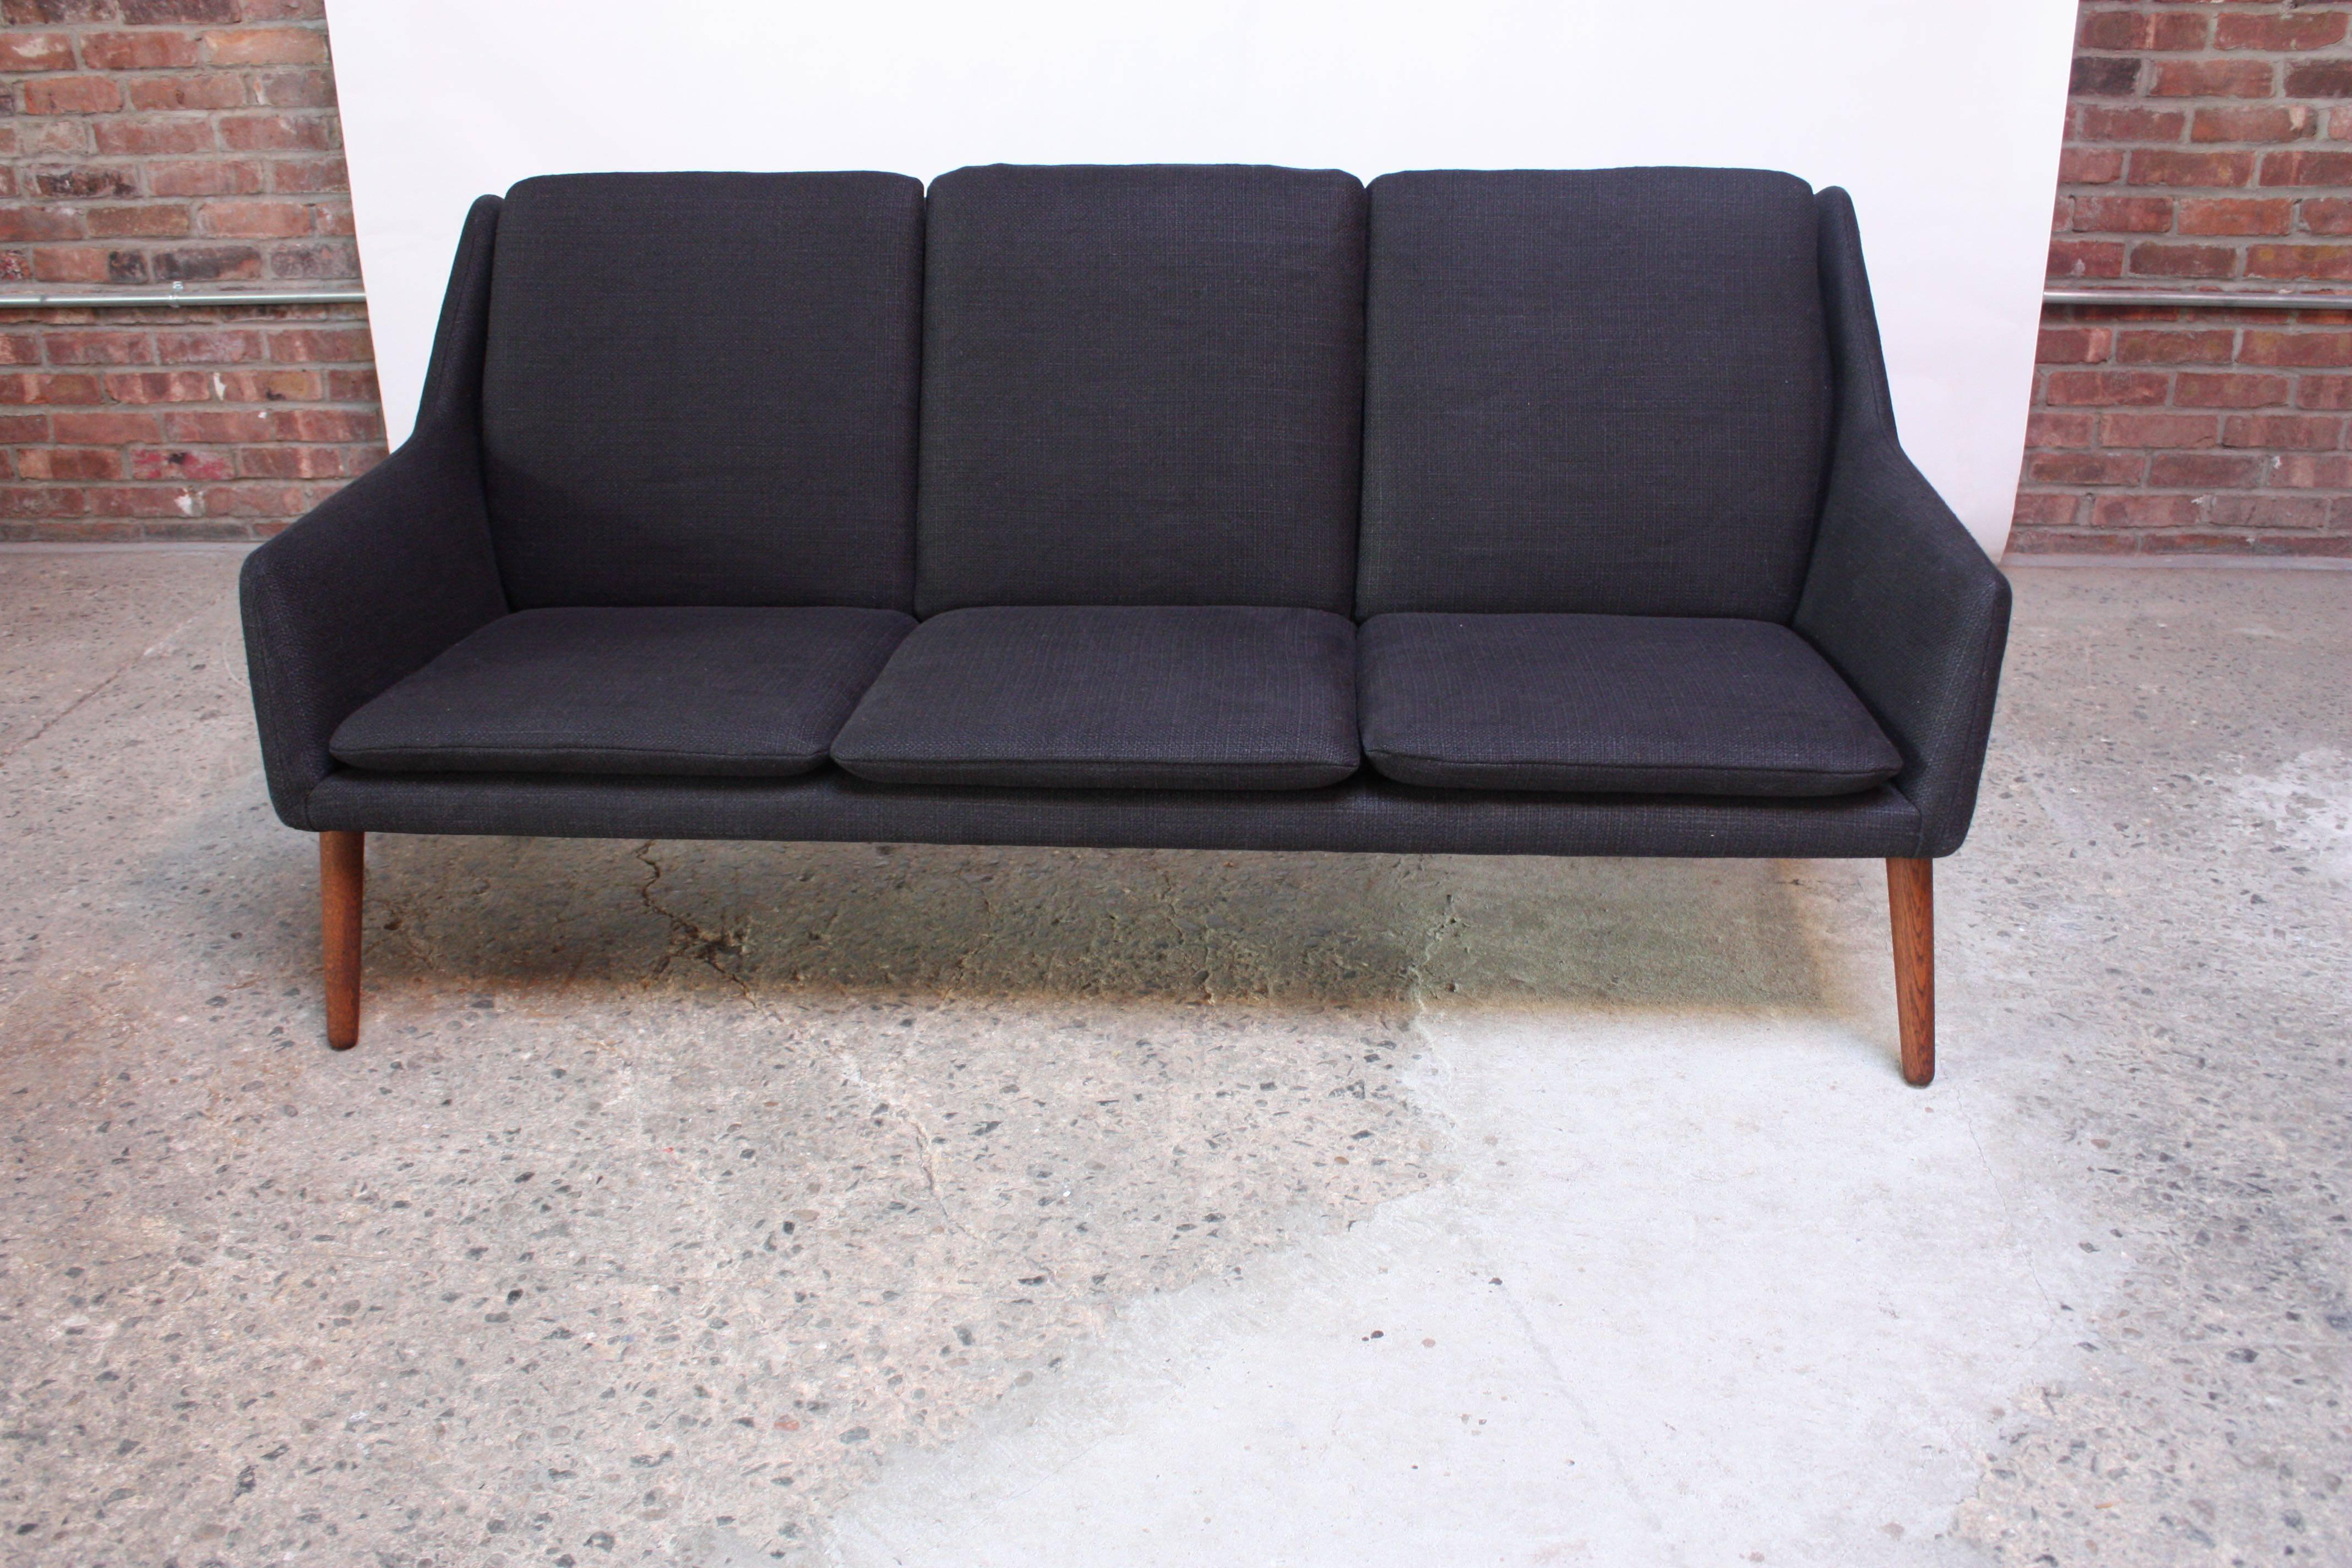 Dieses selten gesehene dänische Sofa wurde von Erik Osterman und H. Høpner Petersen für Godtfred Petersen in den späten 1950er Jahren entworfen. Er zeichnet sich durch klare Linien aus, die durch dünne, gespreizte Beine aus gebeiztem Eichenholz